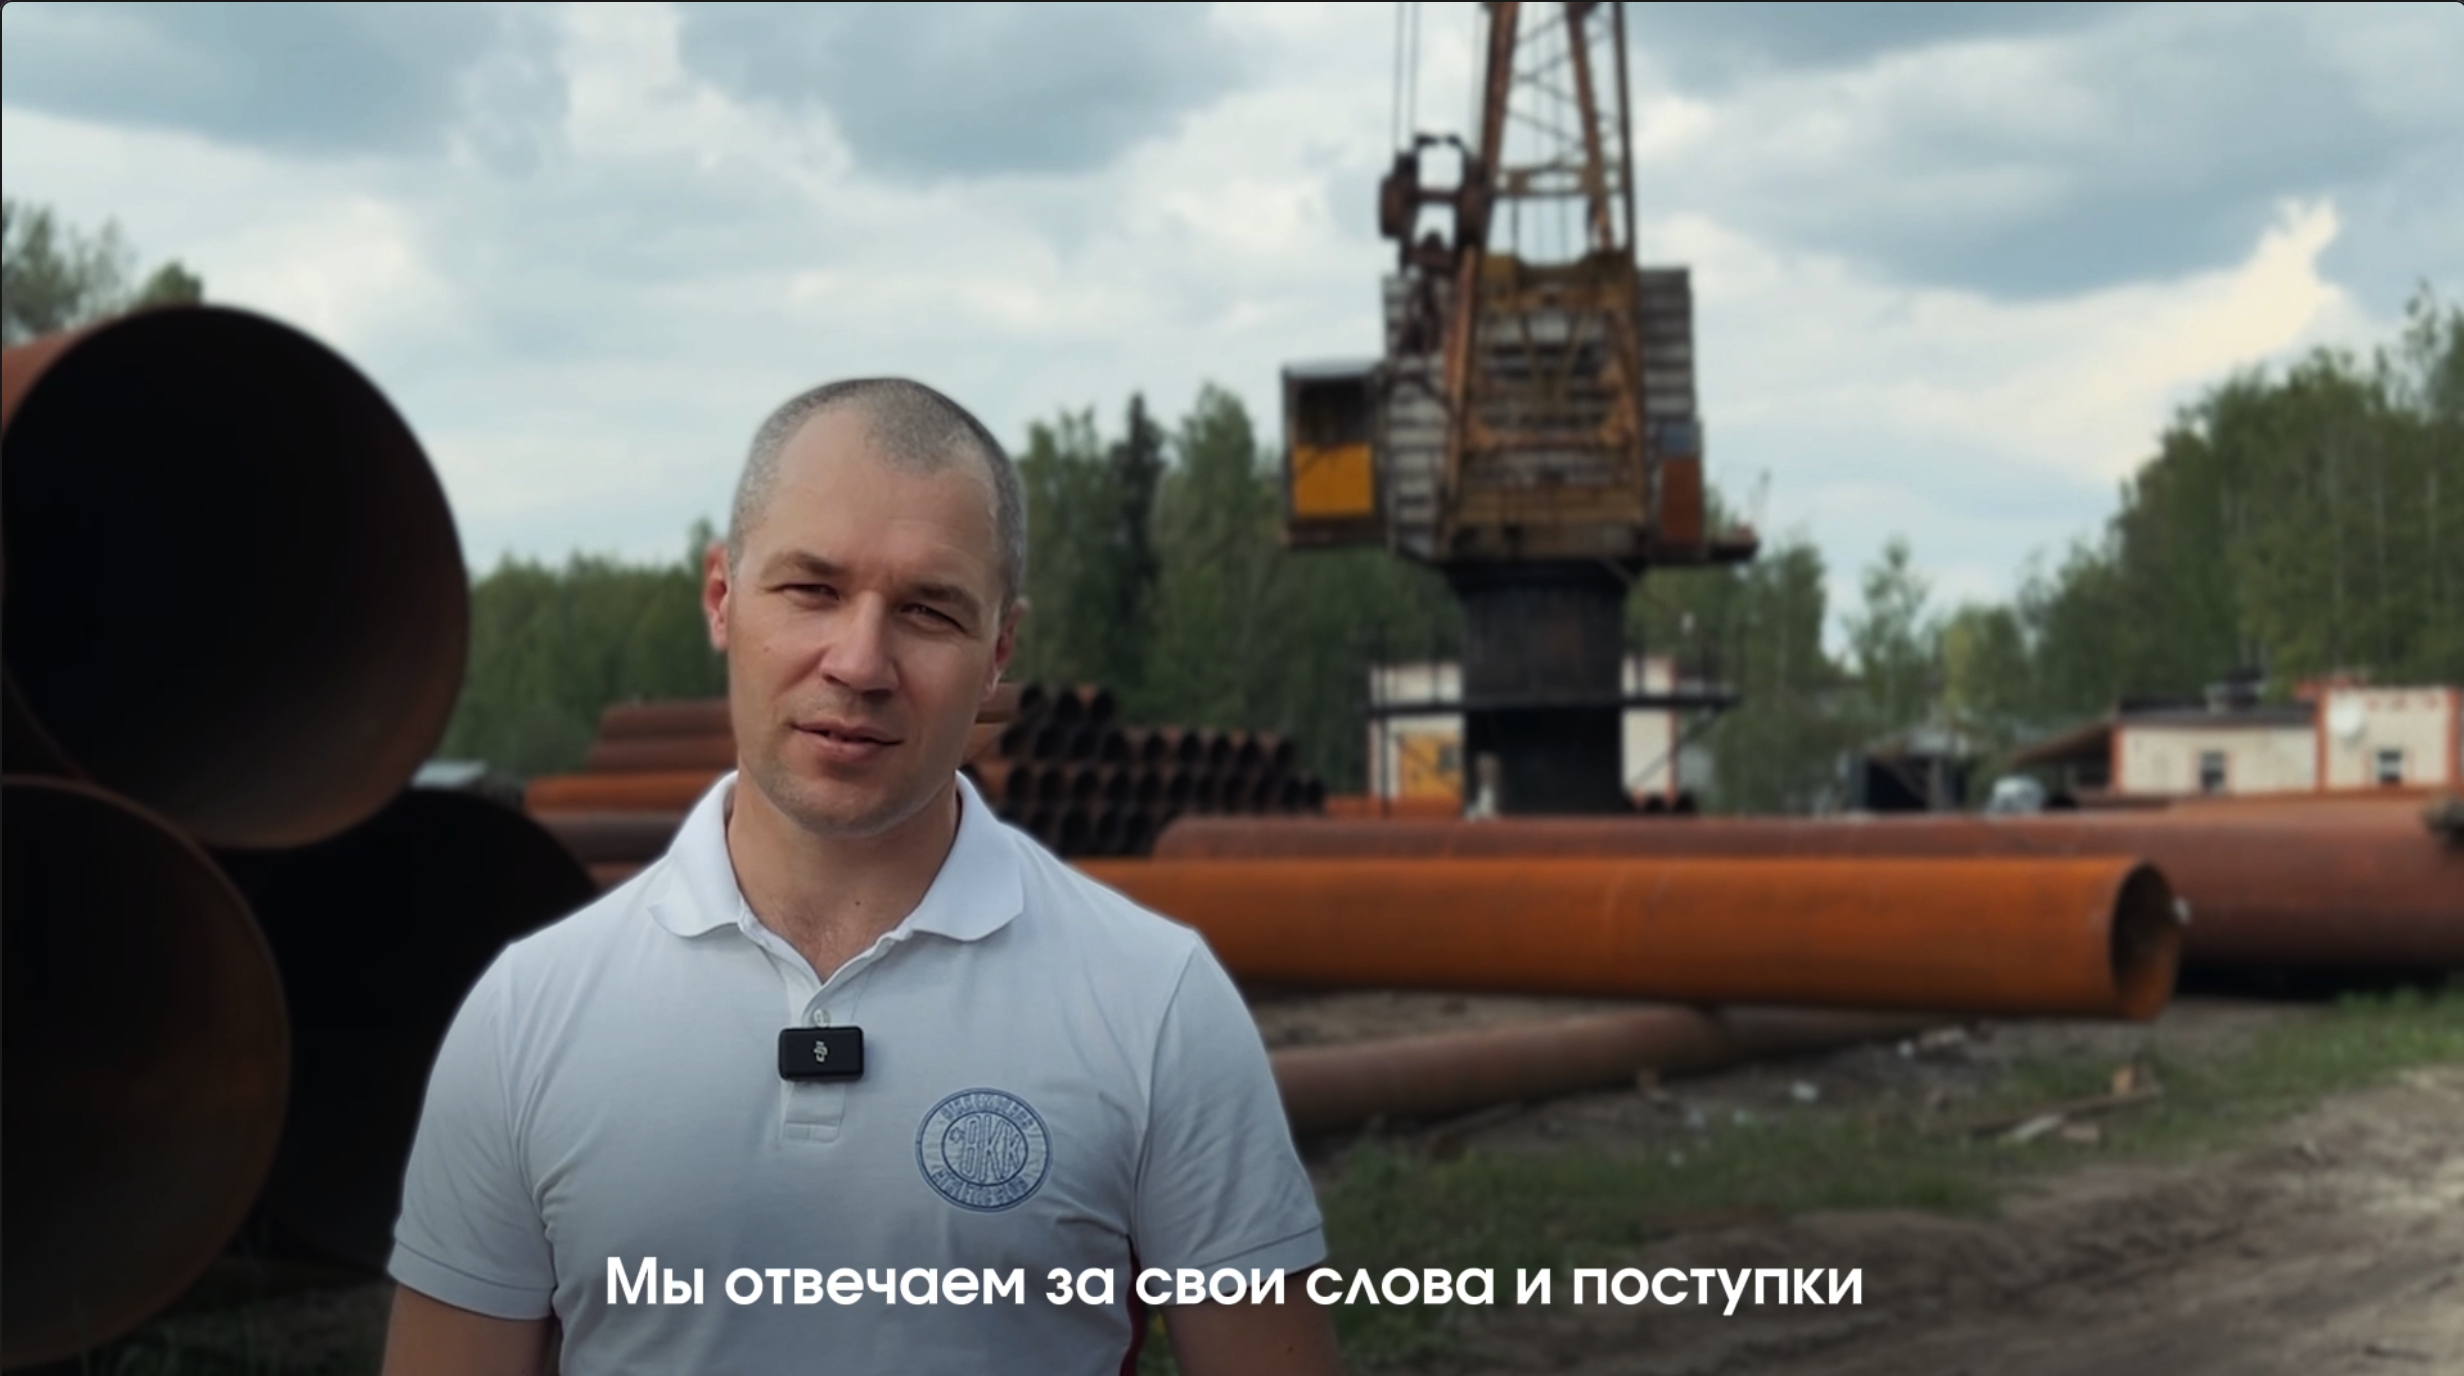 ЭНЕРГОПРОМСНАБ — лидер поставщик трубы б/у для строительной и дорожно-строительной отраслей Московского региона